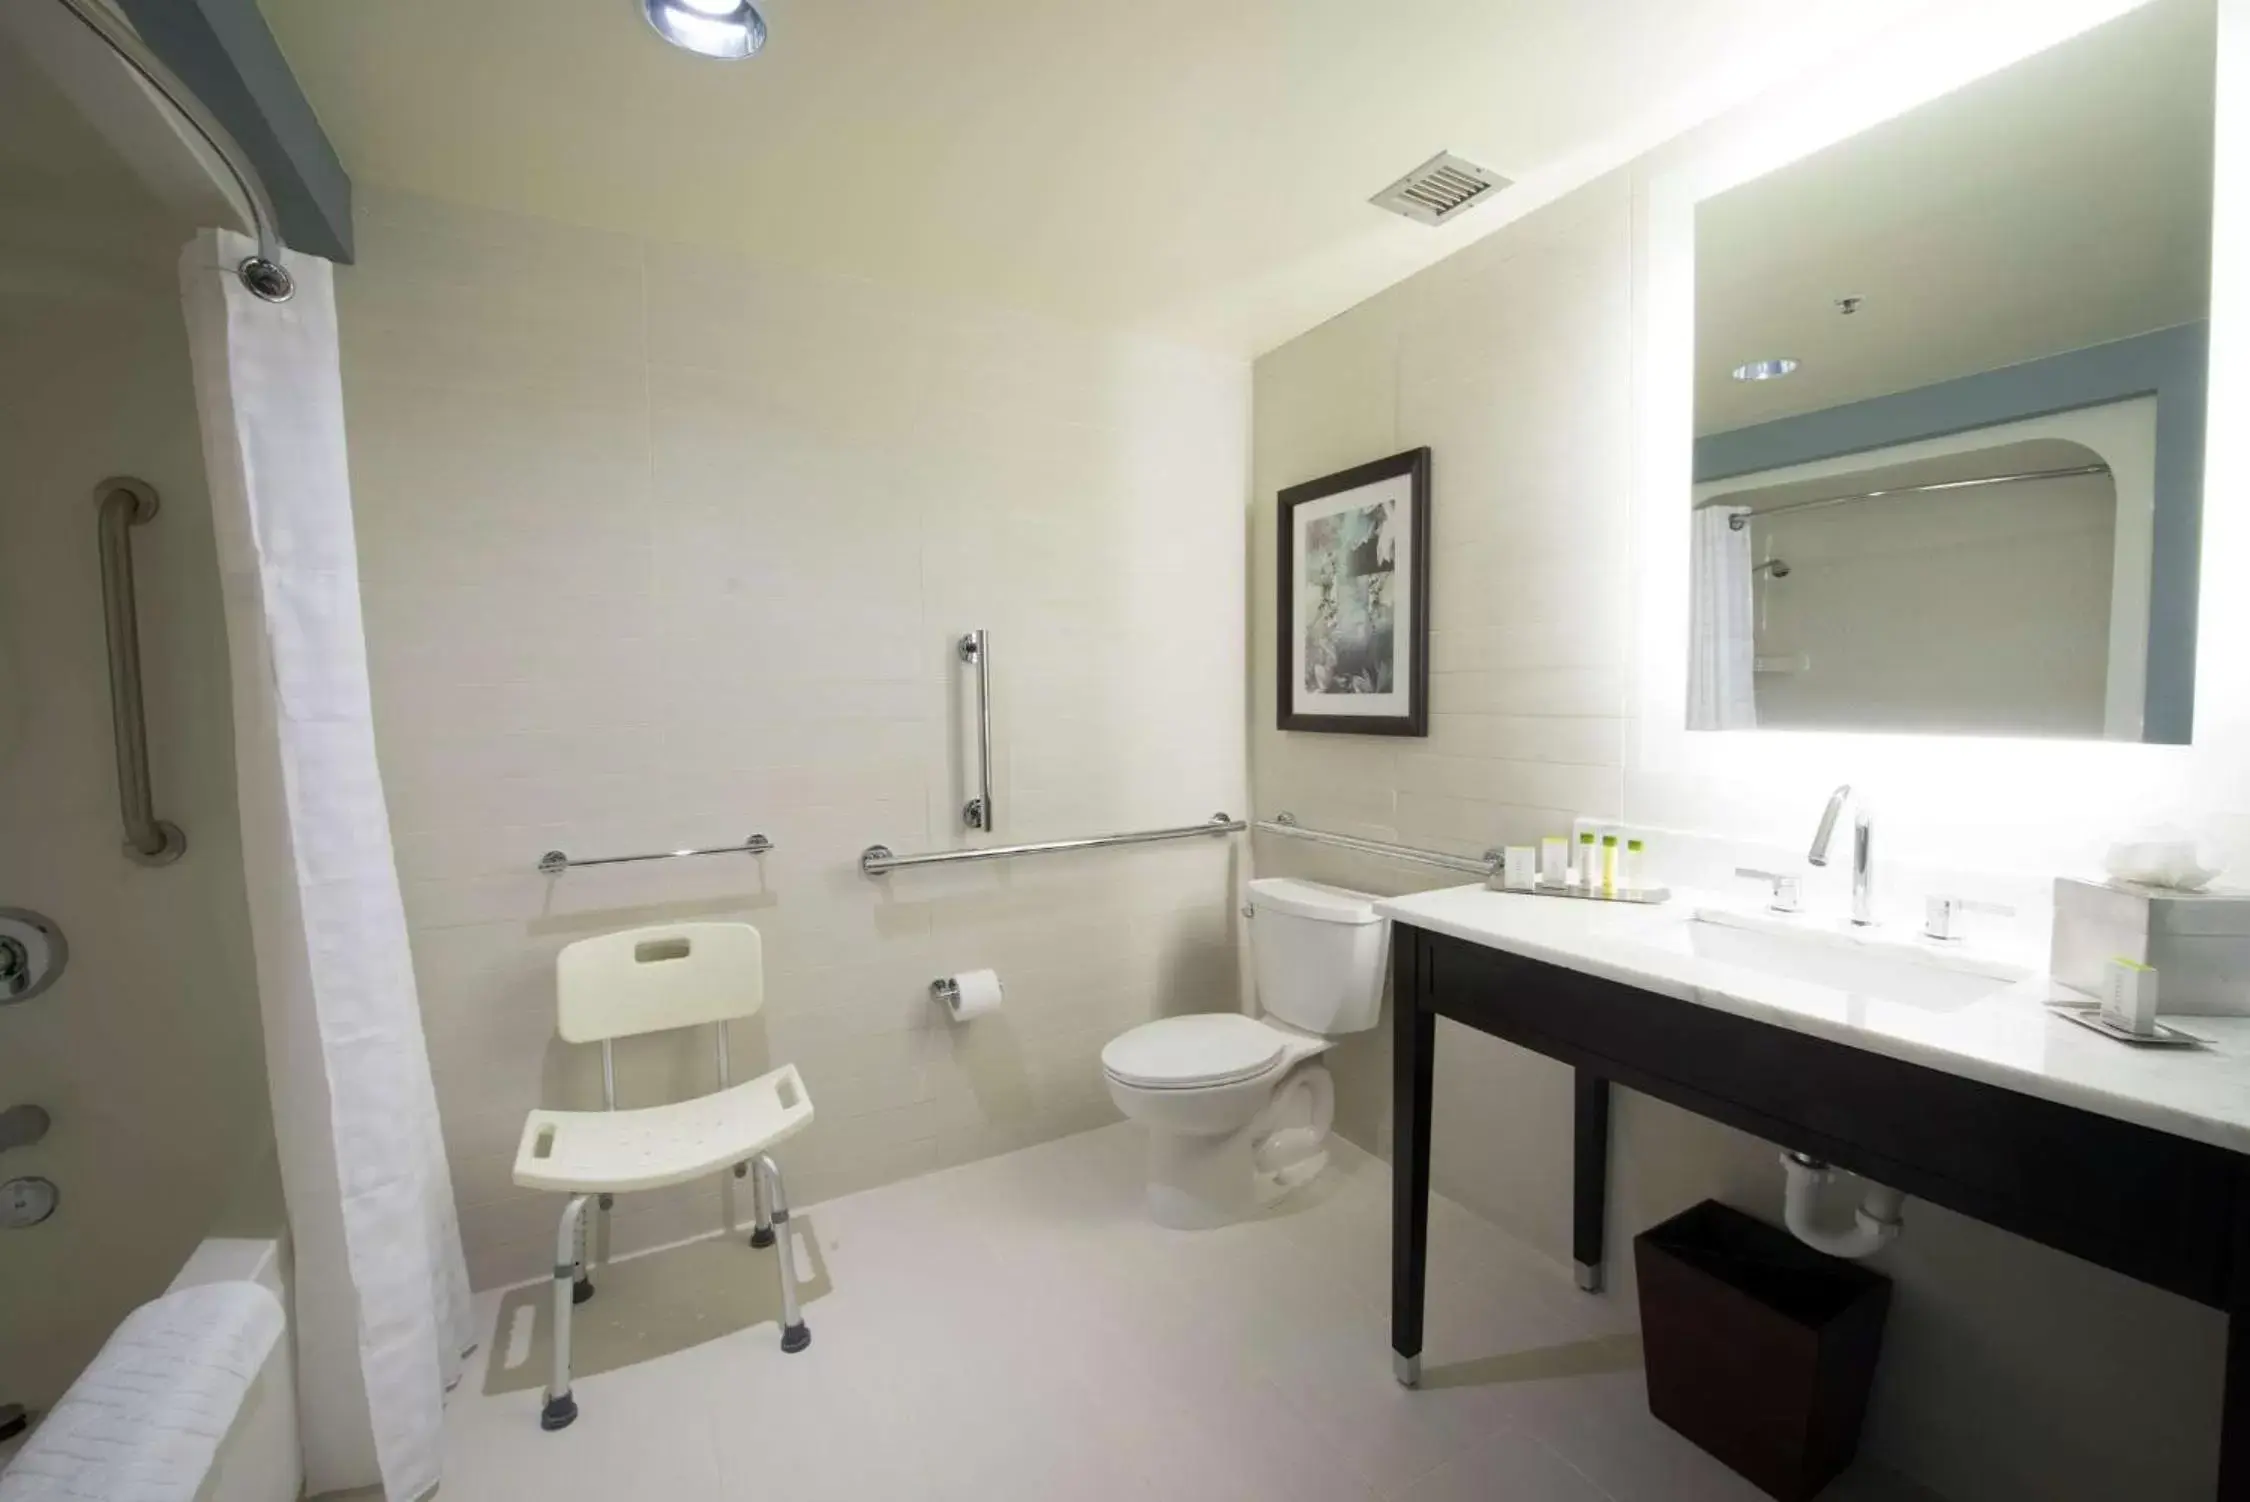 Bathroom in DoubleTree by Hilton Binghamton